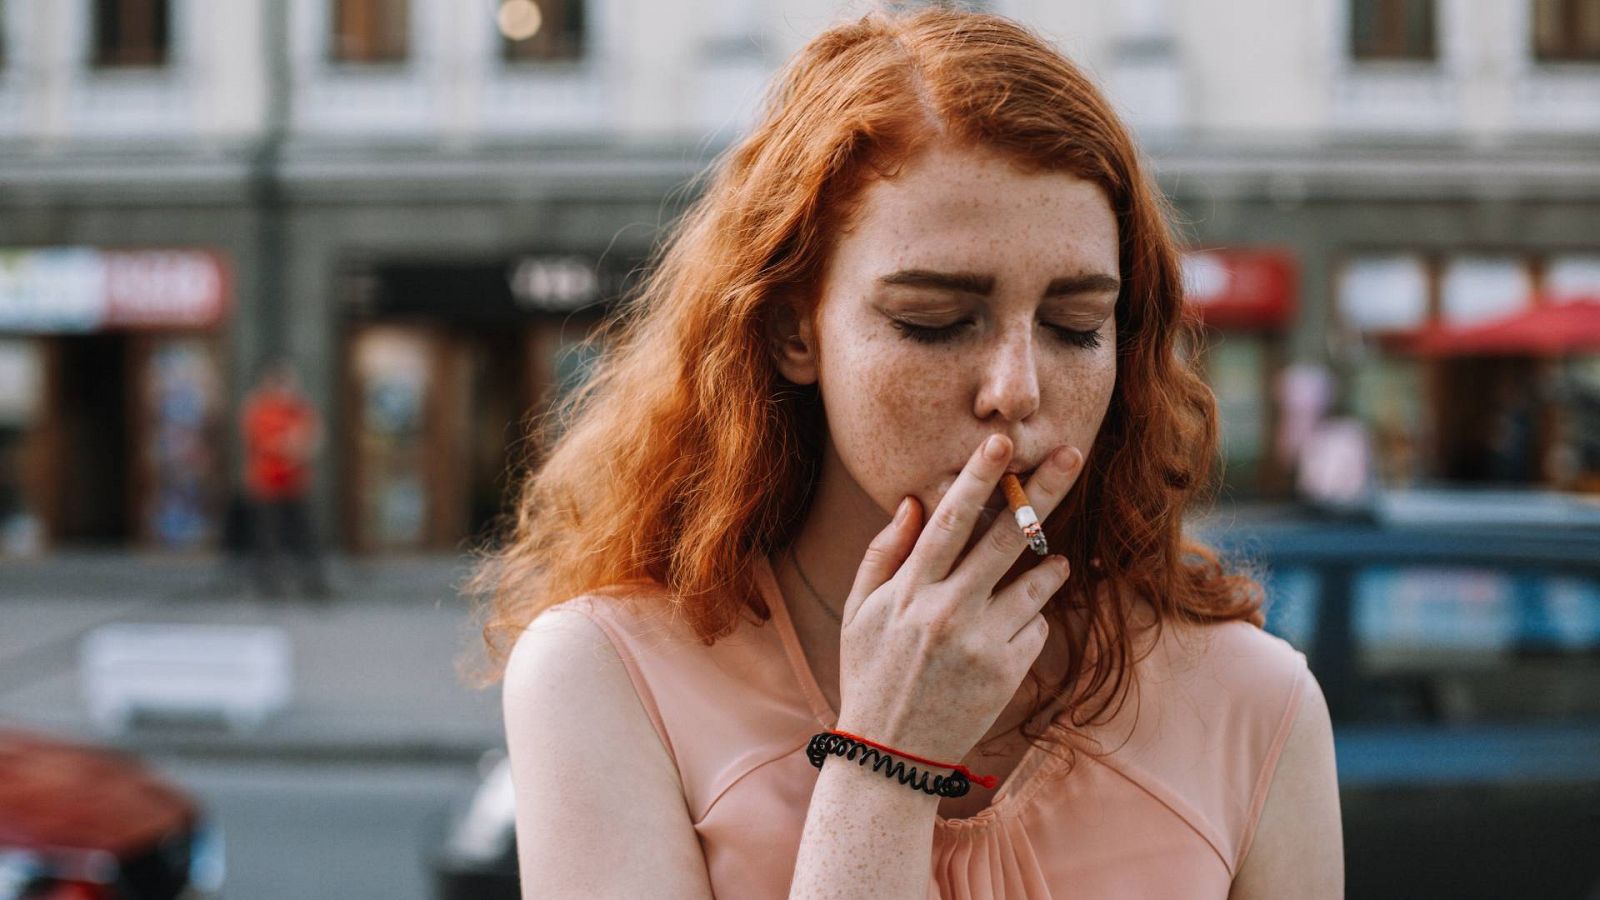 El consumo del tabaco crece entre los jóvenes porque lo ve en las redes sociales